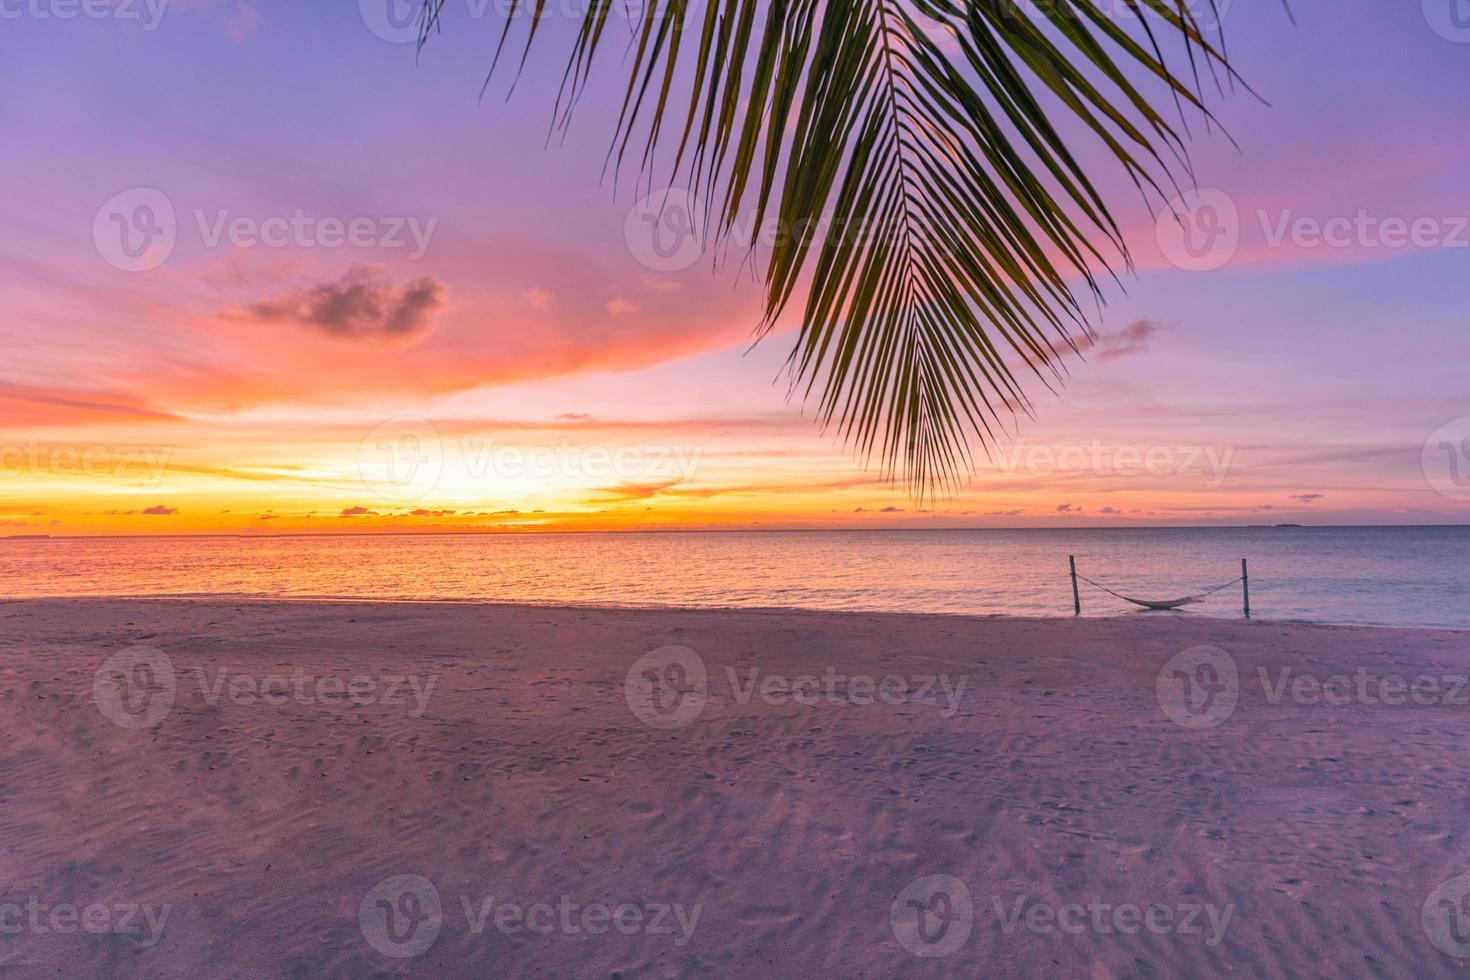 coucher de soleil tranquille sur la plage. feuille de palmier avec un ciel coloré au coucher du soleil. paysage d'été, ambiance paisible incroyable. paysage naturel à la plage tropicale. ciel de coucher de soleil de sable de mer avec horizon, paysage magnifique photo